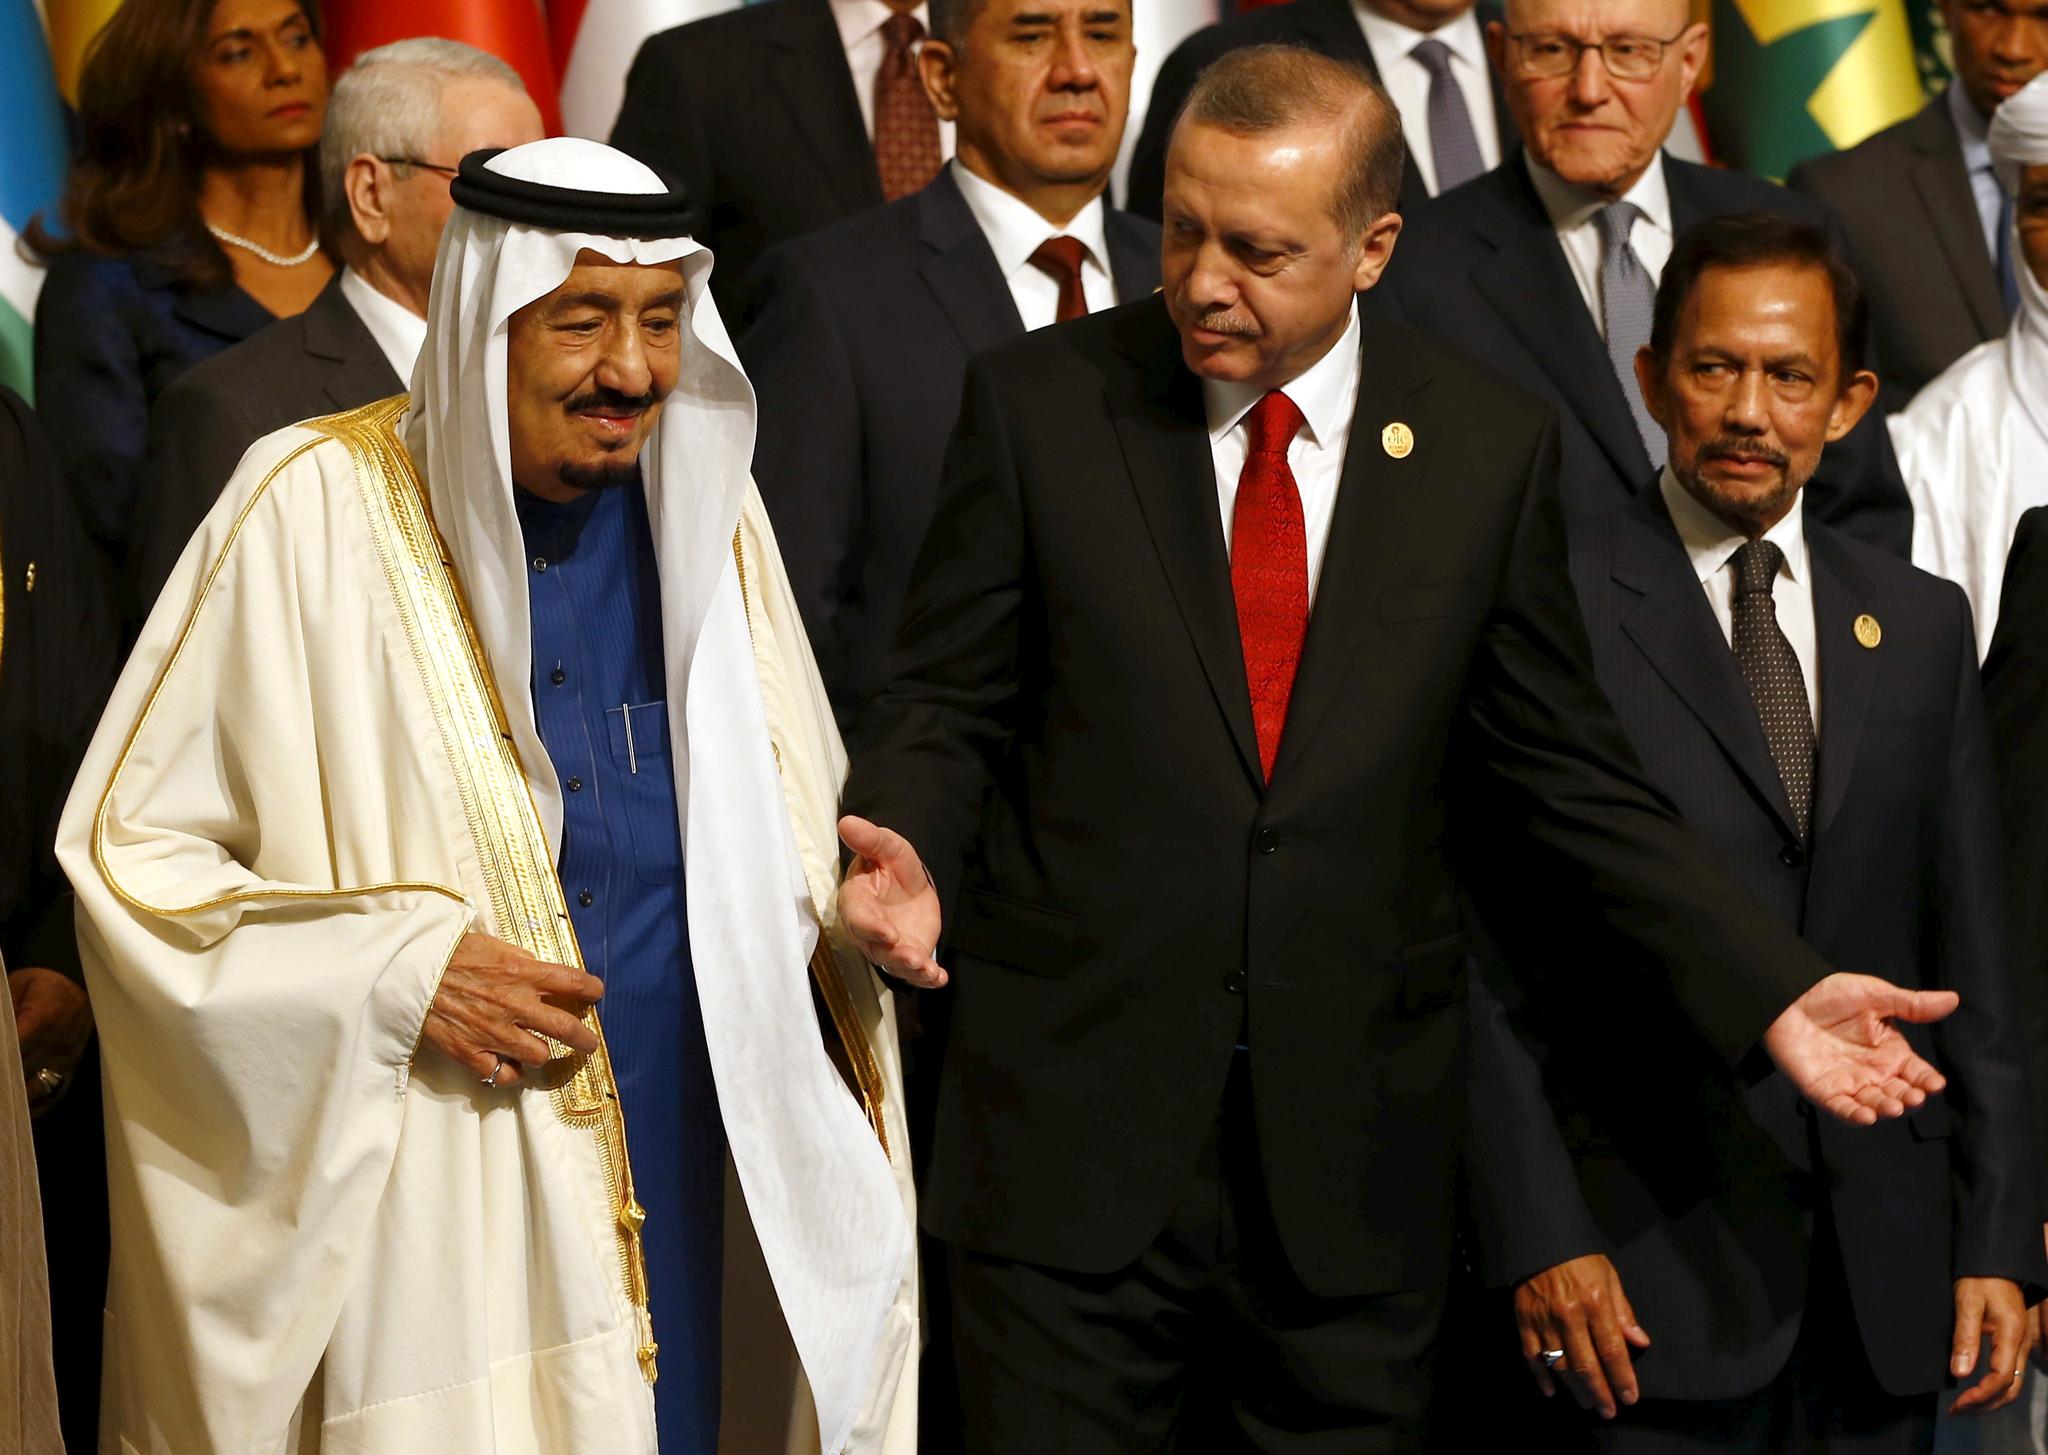 President Erdogan sa han ville ringe kong Salman og be om at mennene som er mistenkt for drapet ble sendt til Istanbul.